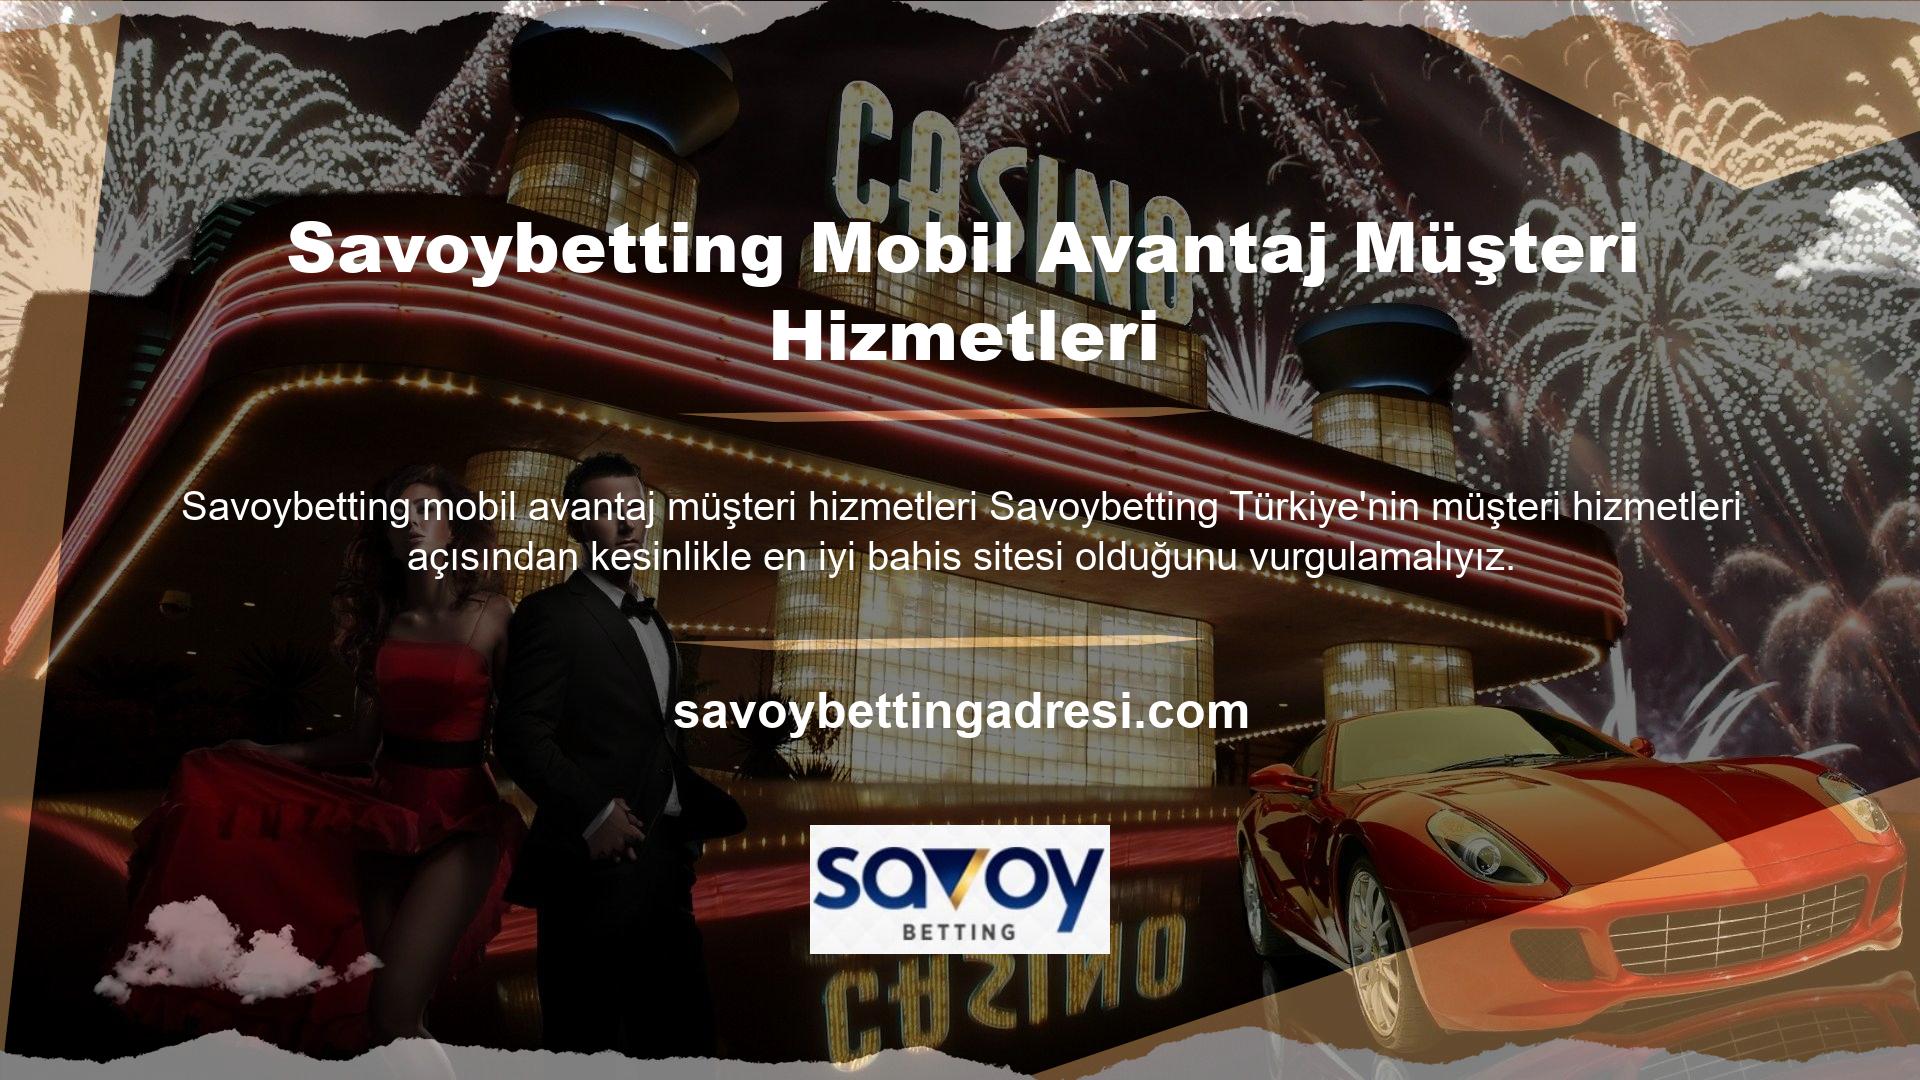 Savoybetting, mükemmel müşteri desteği sağlamak için canlı desteğin yanı sıra çeşitli iletişim seçenekleri de sunuyor